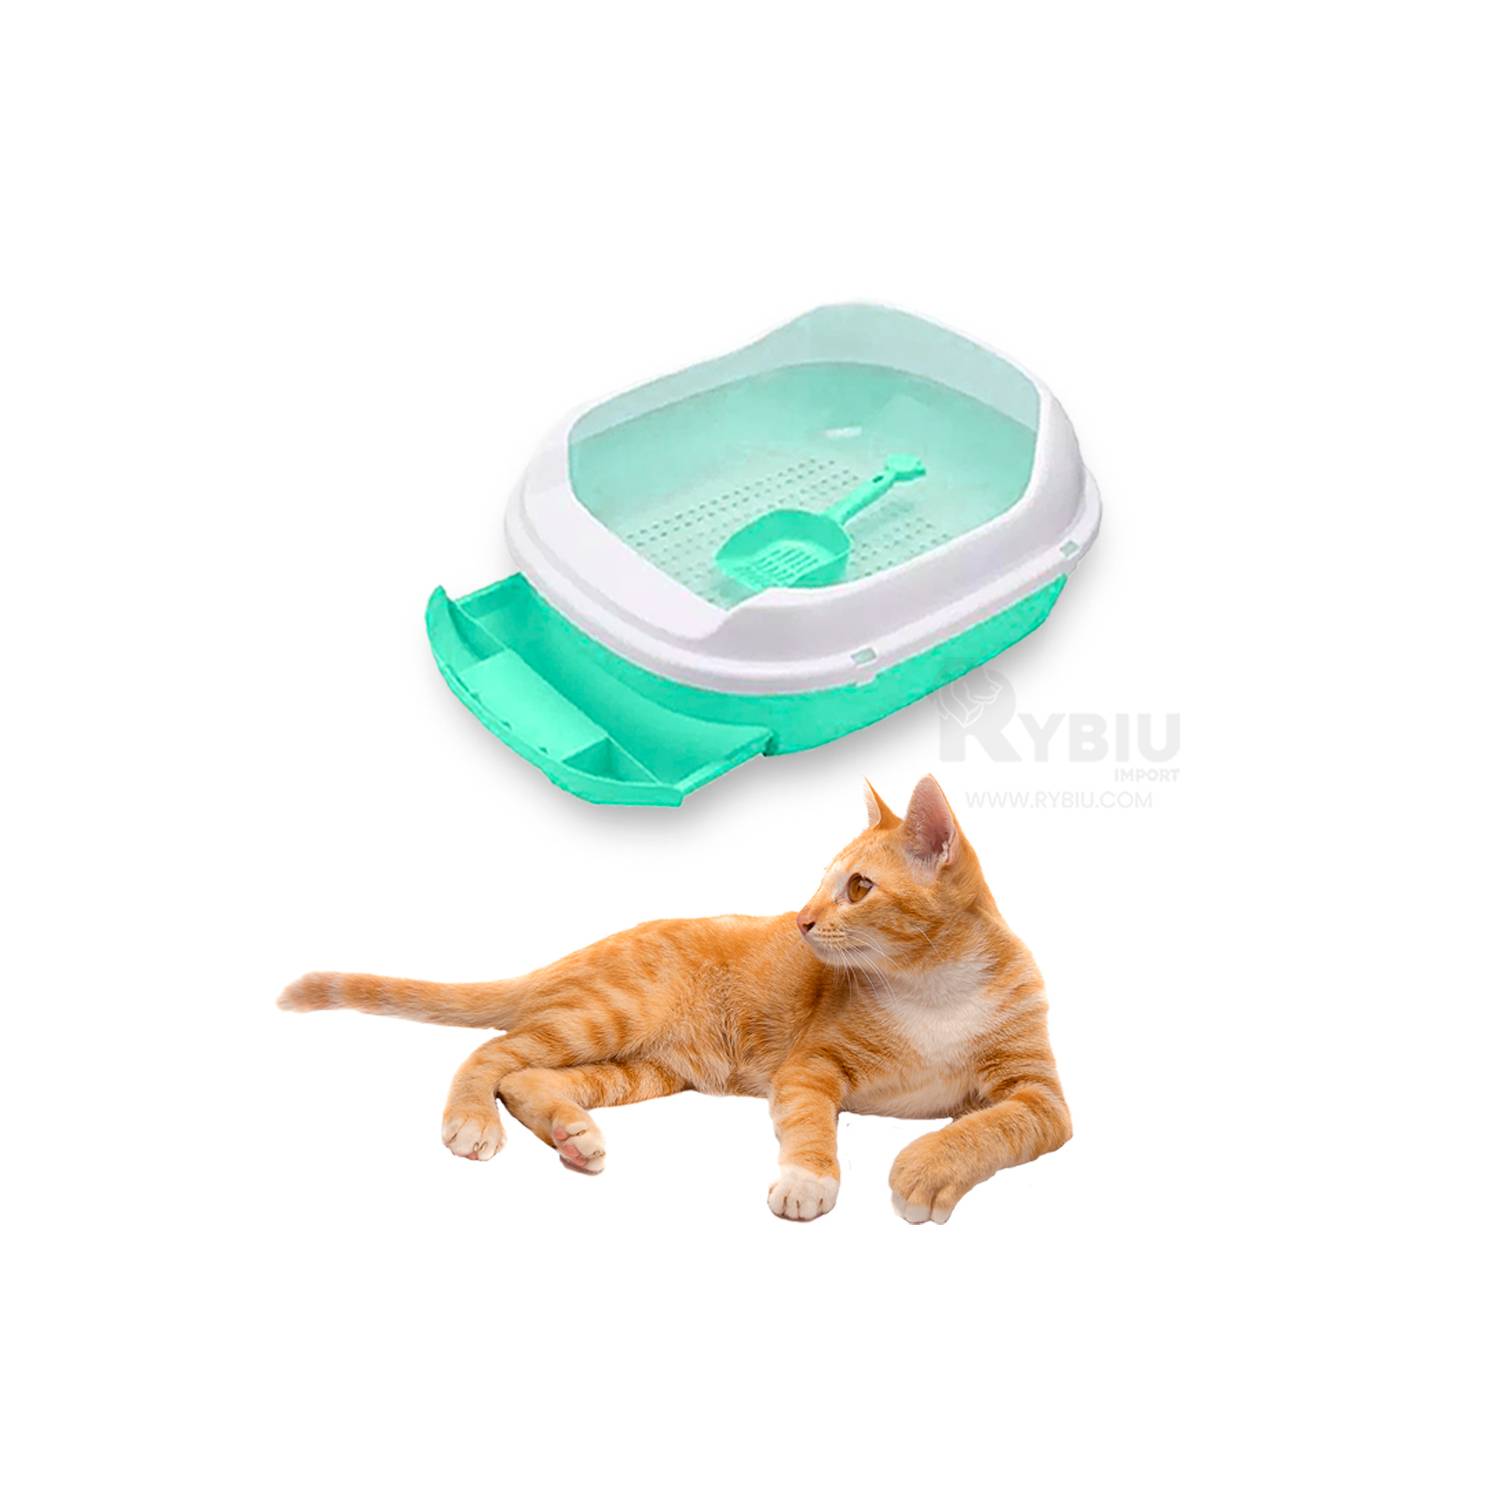 Bandeja de arena para gatos verde con filtro - Cat-oh pet shop